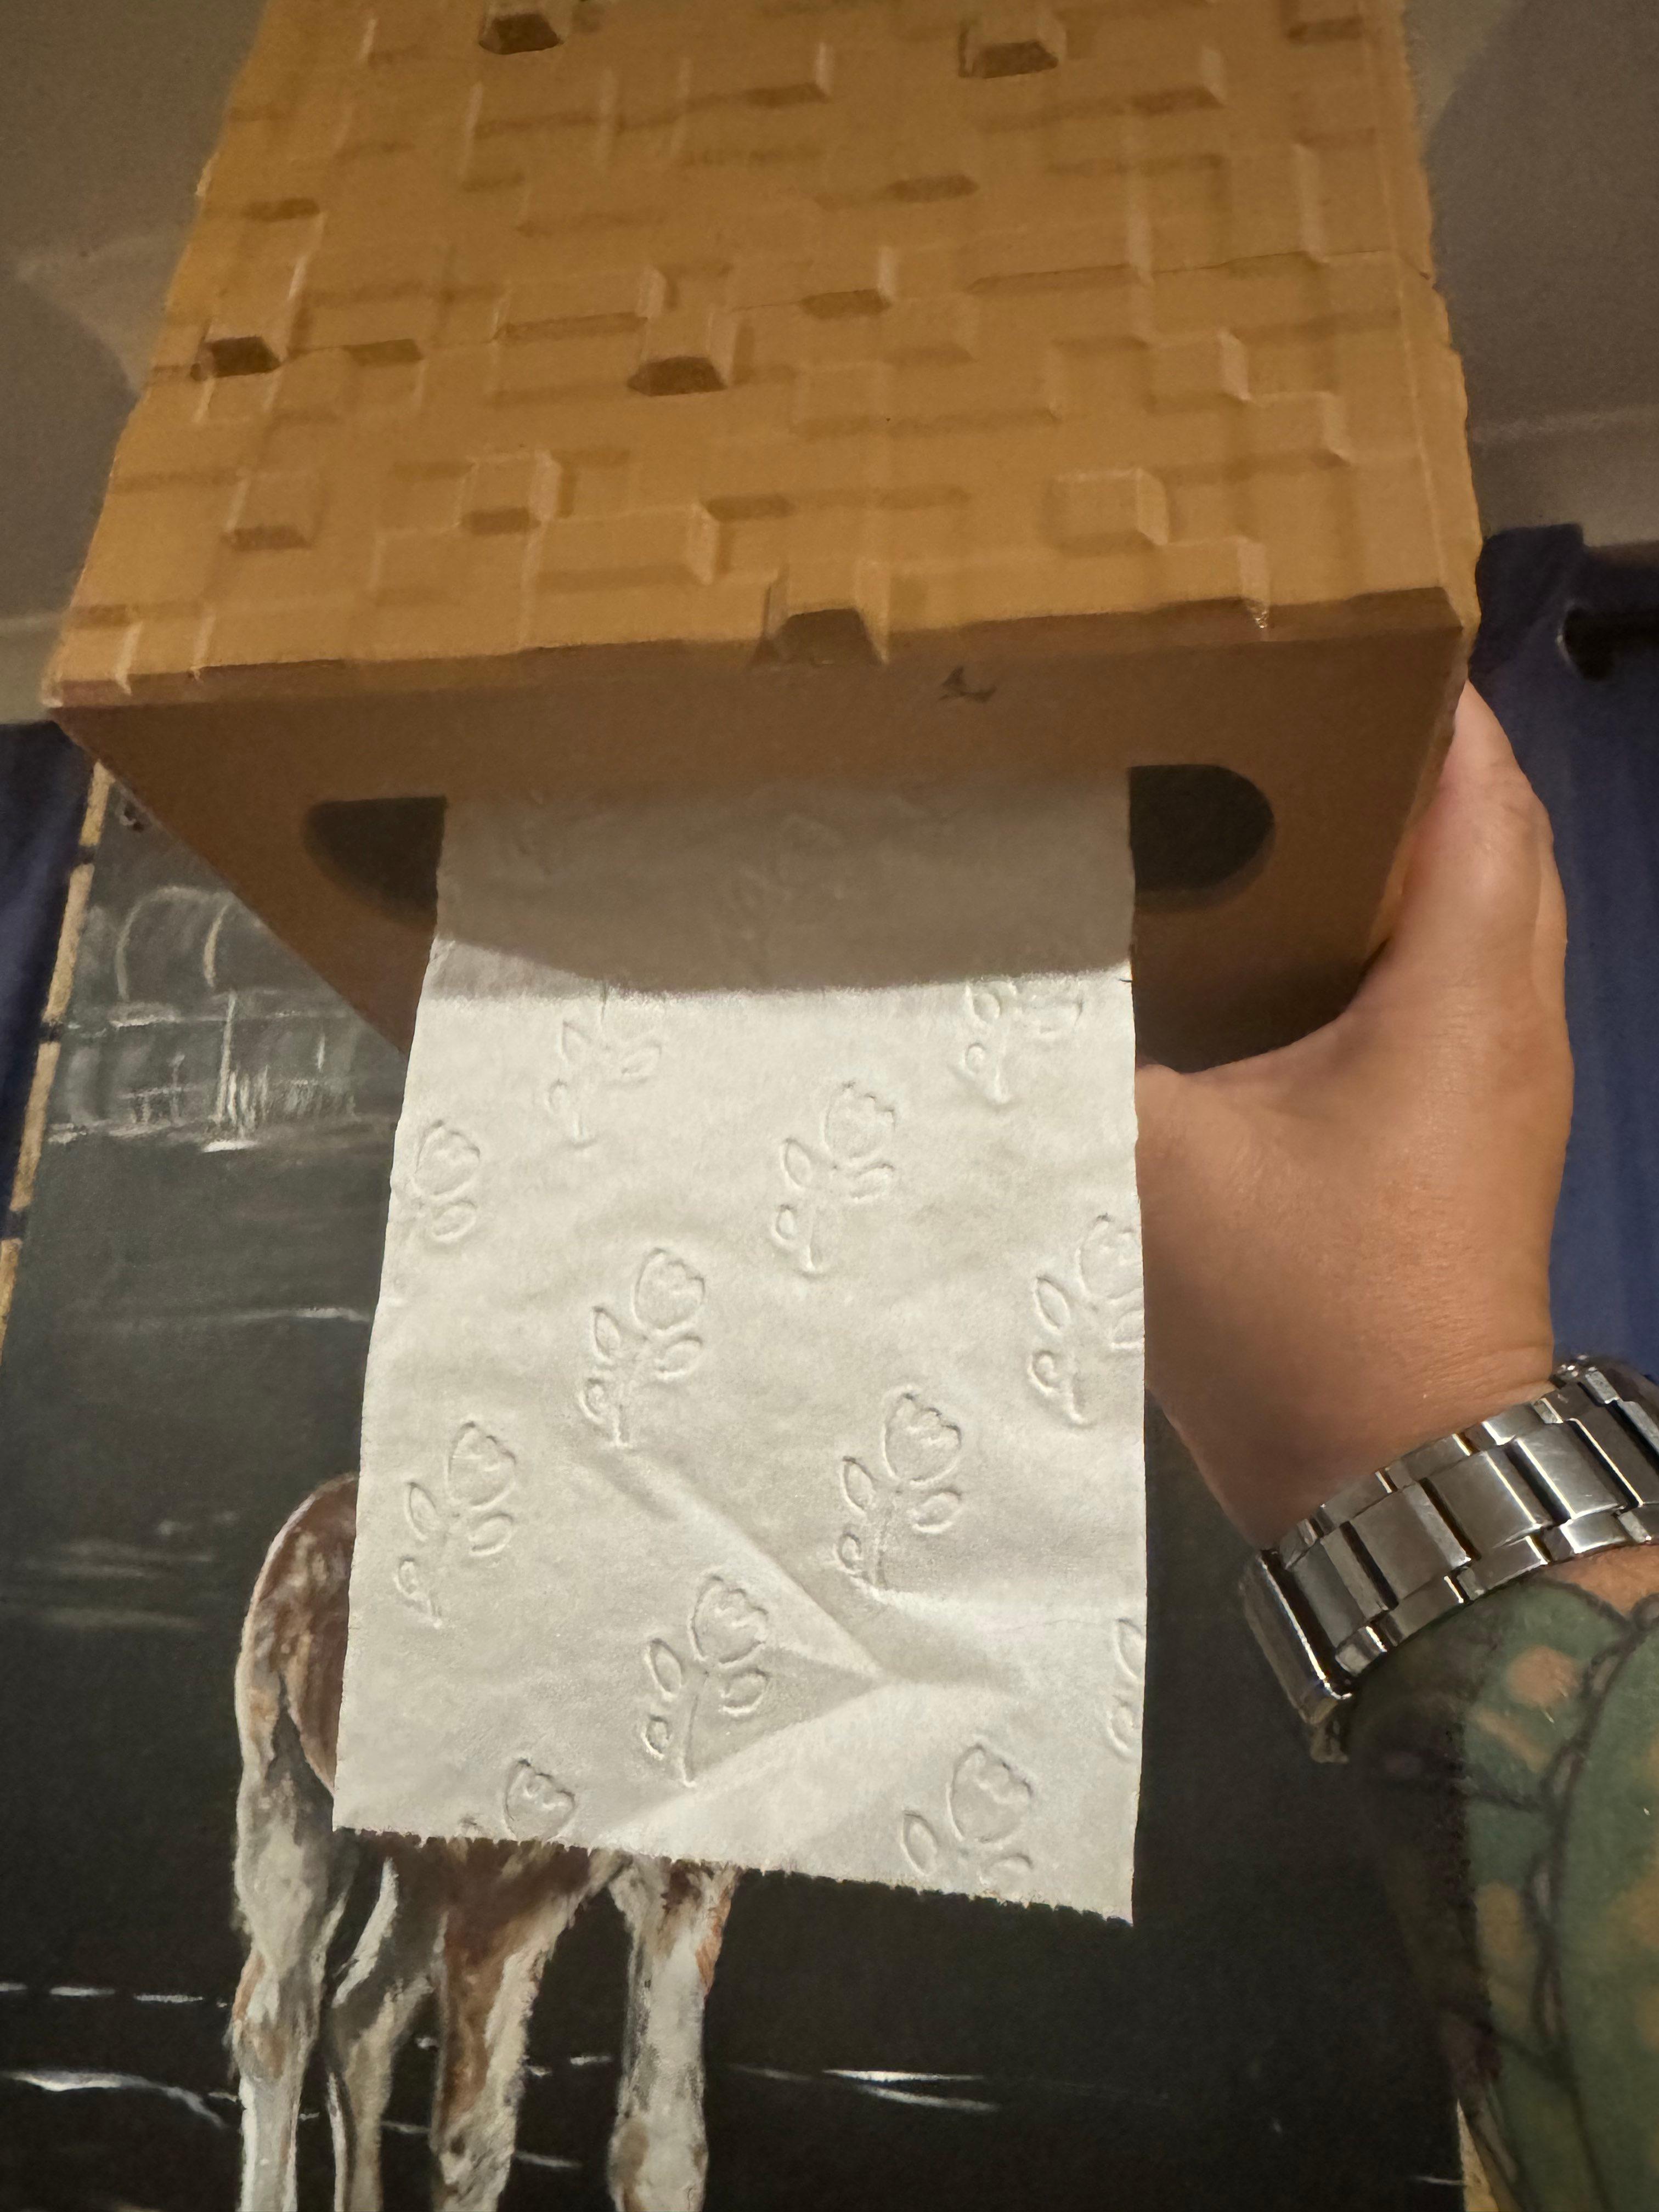 Minecraft Box toilet roll holder 3d model